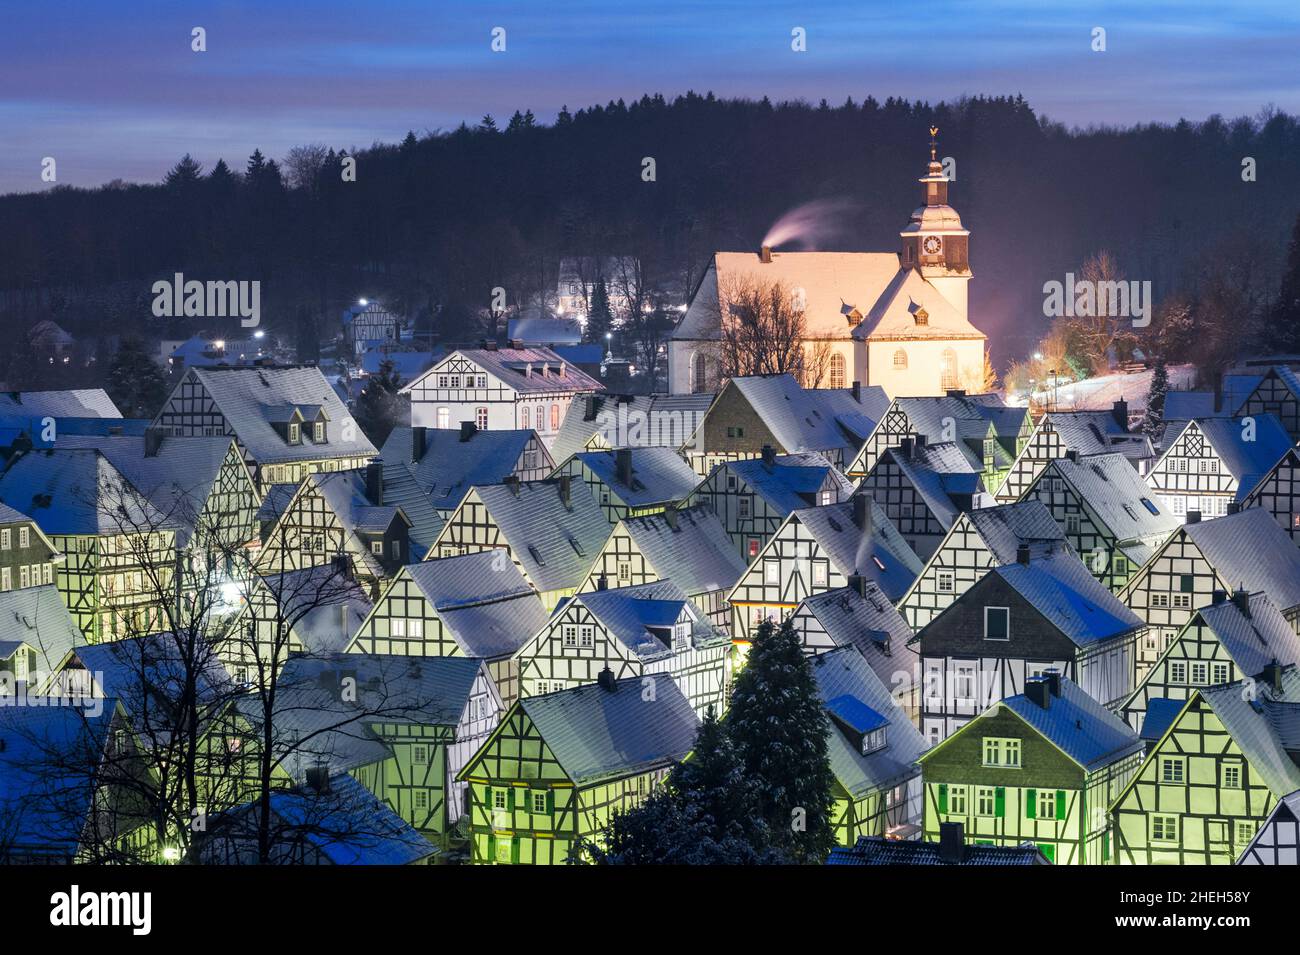 En soirée, vue d'hiver sur les vieilles maisons enneigées de Freudenberg en Allemagne Banque D'Images